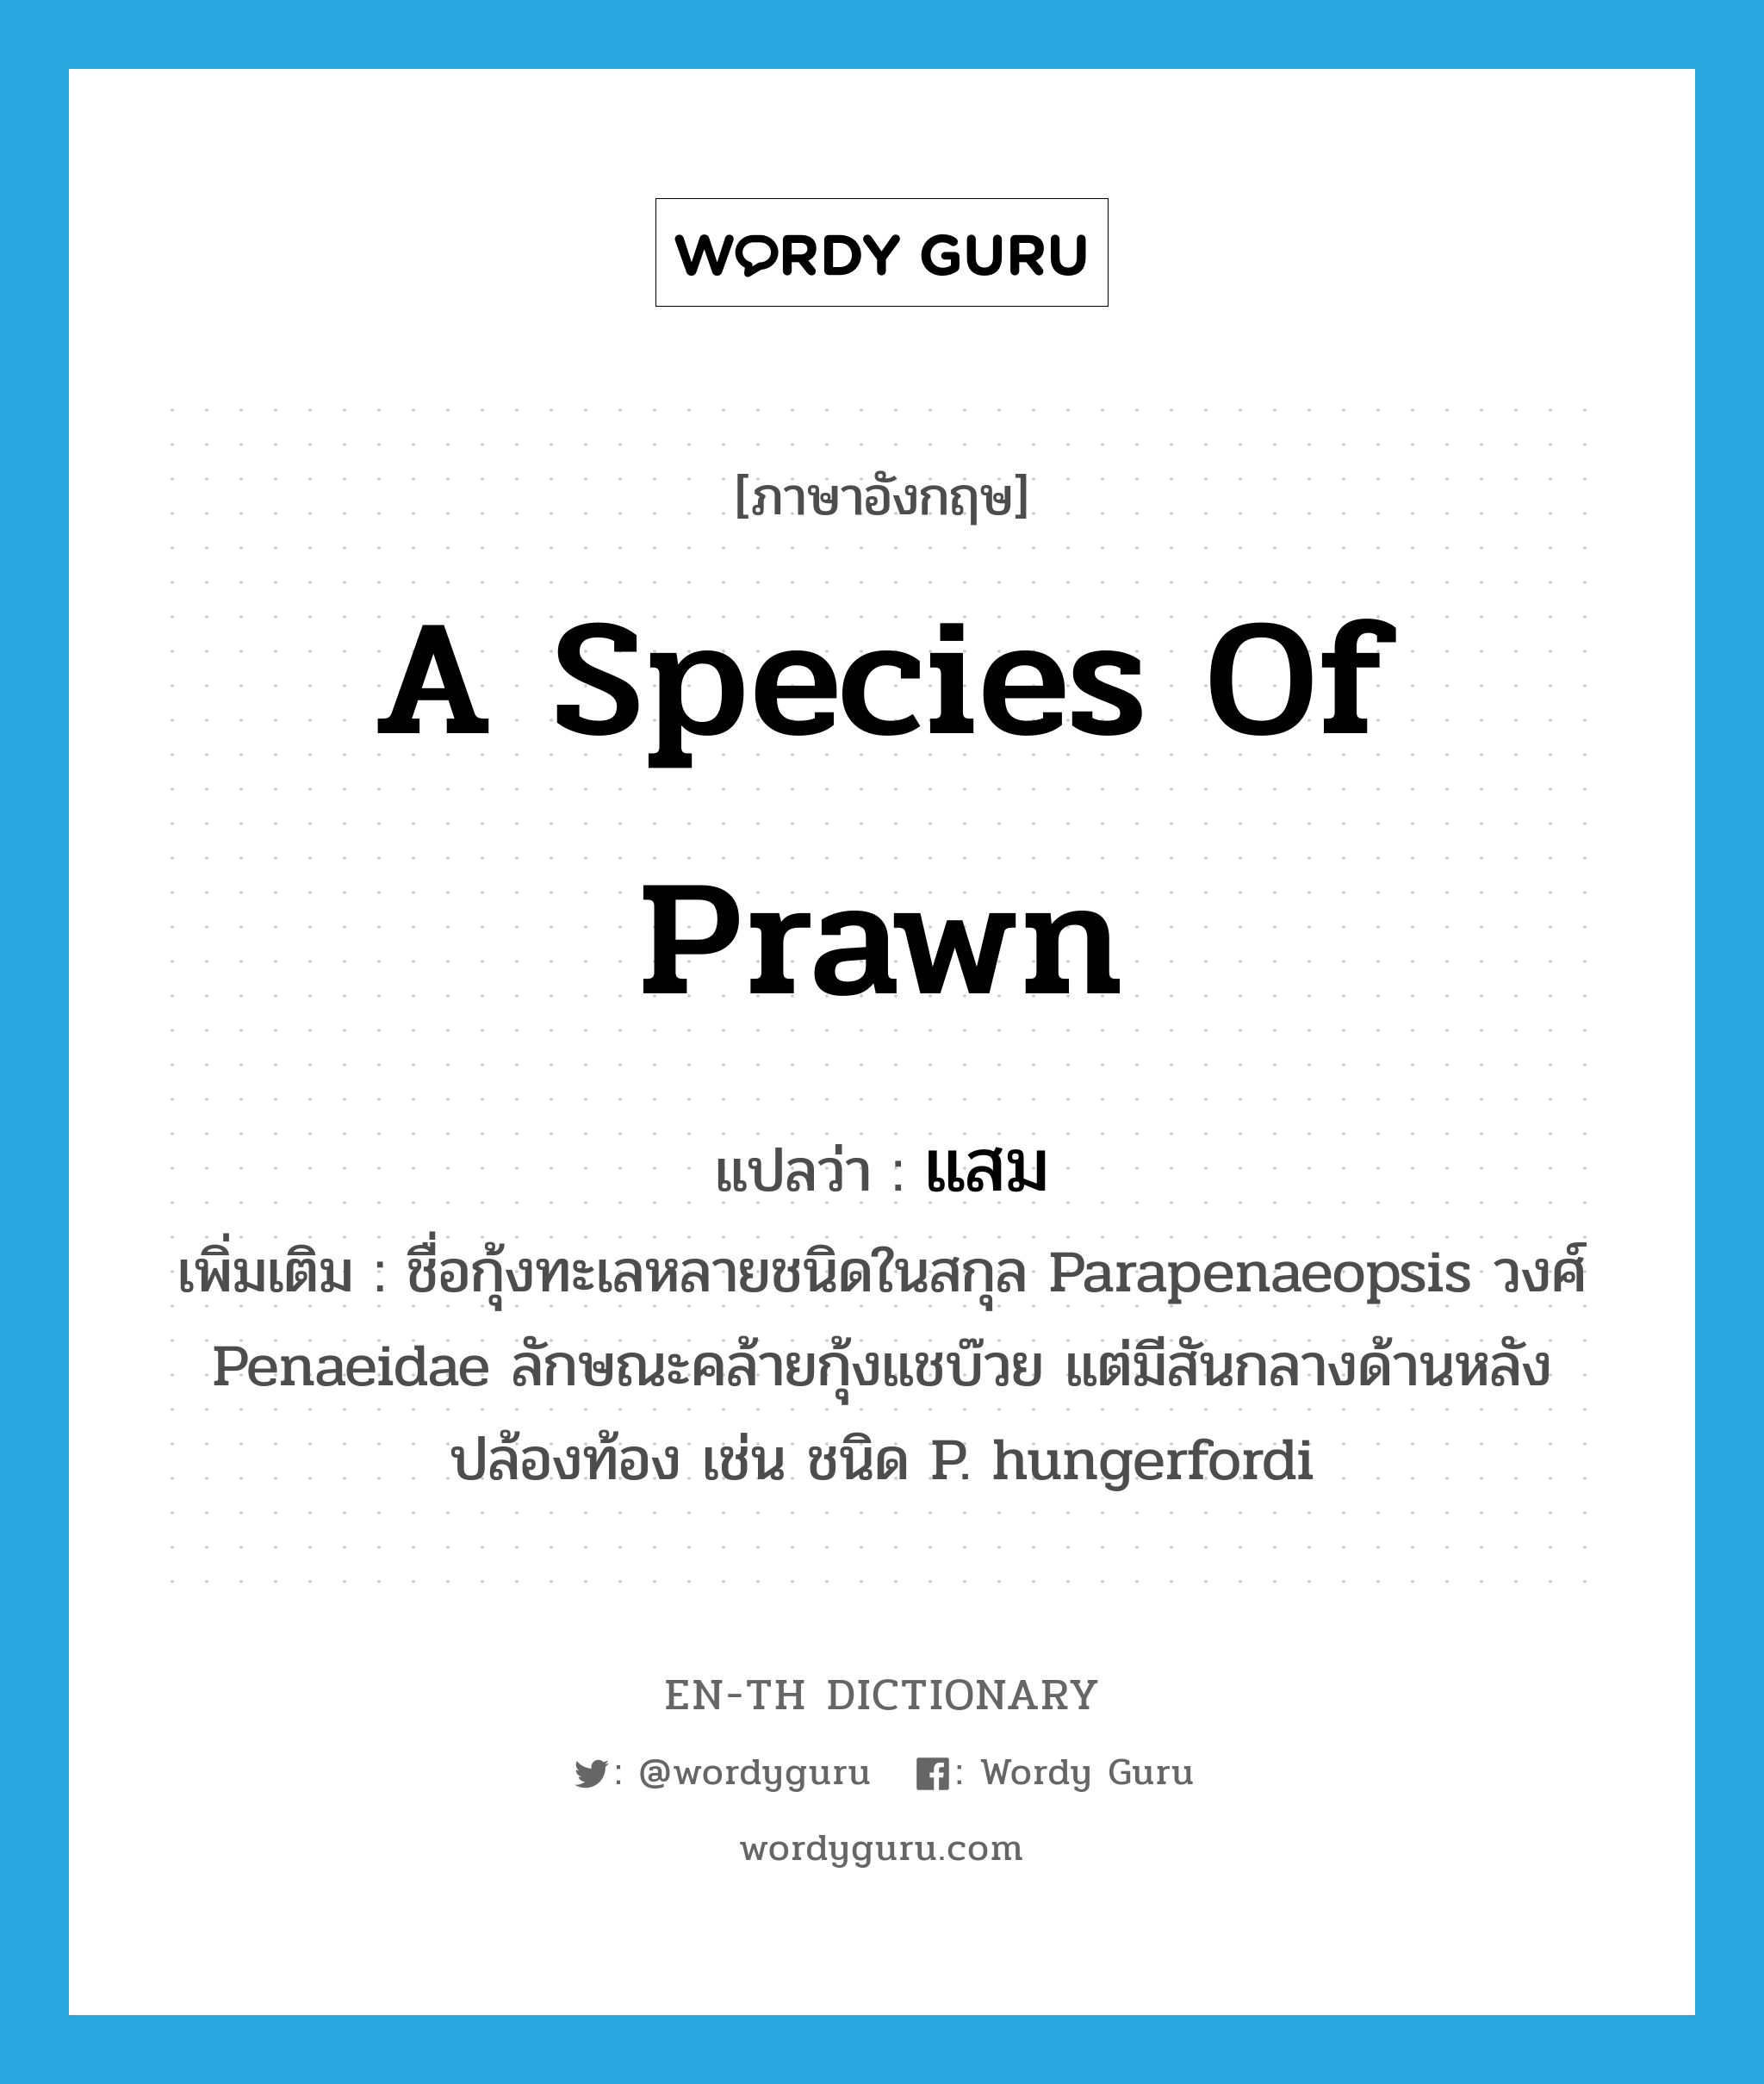 แสม ภาษาอังกฤษ?, คำศัพท์ภาษาอังกฤษ แสม แปลว่า a species of prawn ประเภท N เพิ่มเติม ชื่อกุ้งทะเลหลายชนิดในสกุล Parapenaeopsis วงศ์ Penaeidae ลักษณะคล้ายกุ้งแชบ๊วย แต่มีสันกลางด้านหลังปล้องท้อง เช่น ชนิด P. hungerfordi หมวด N